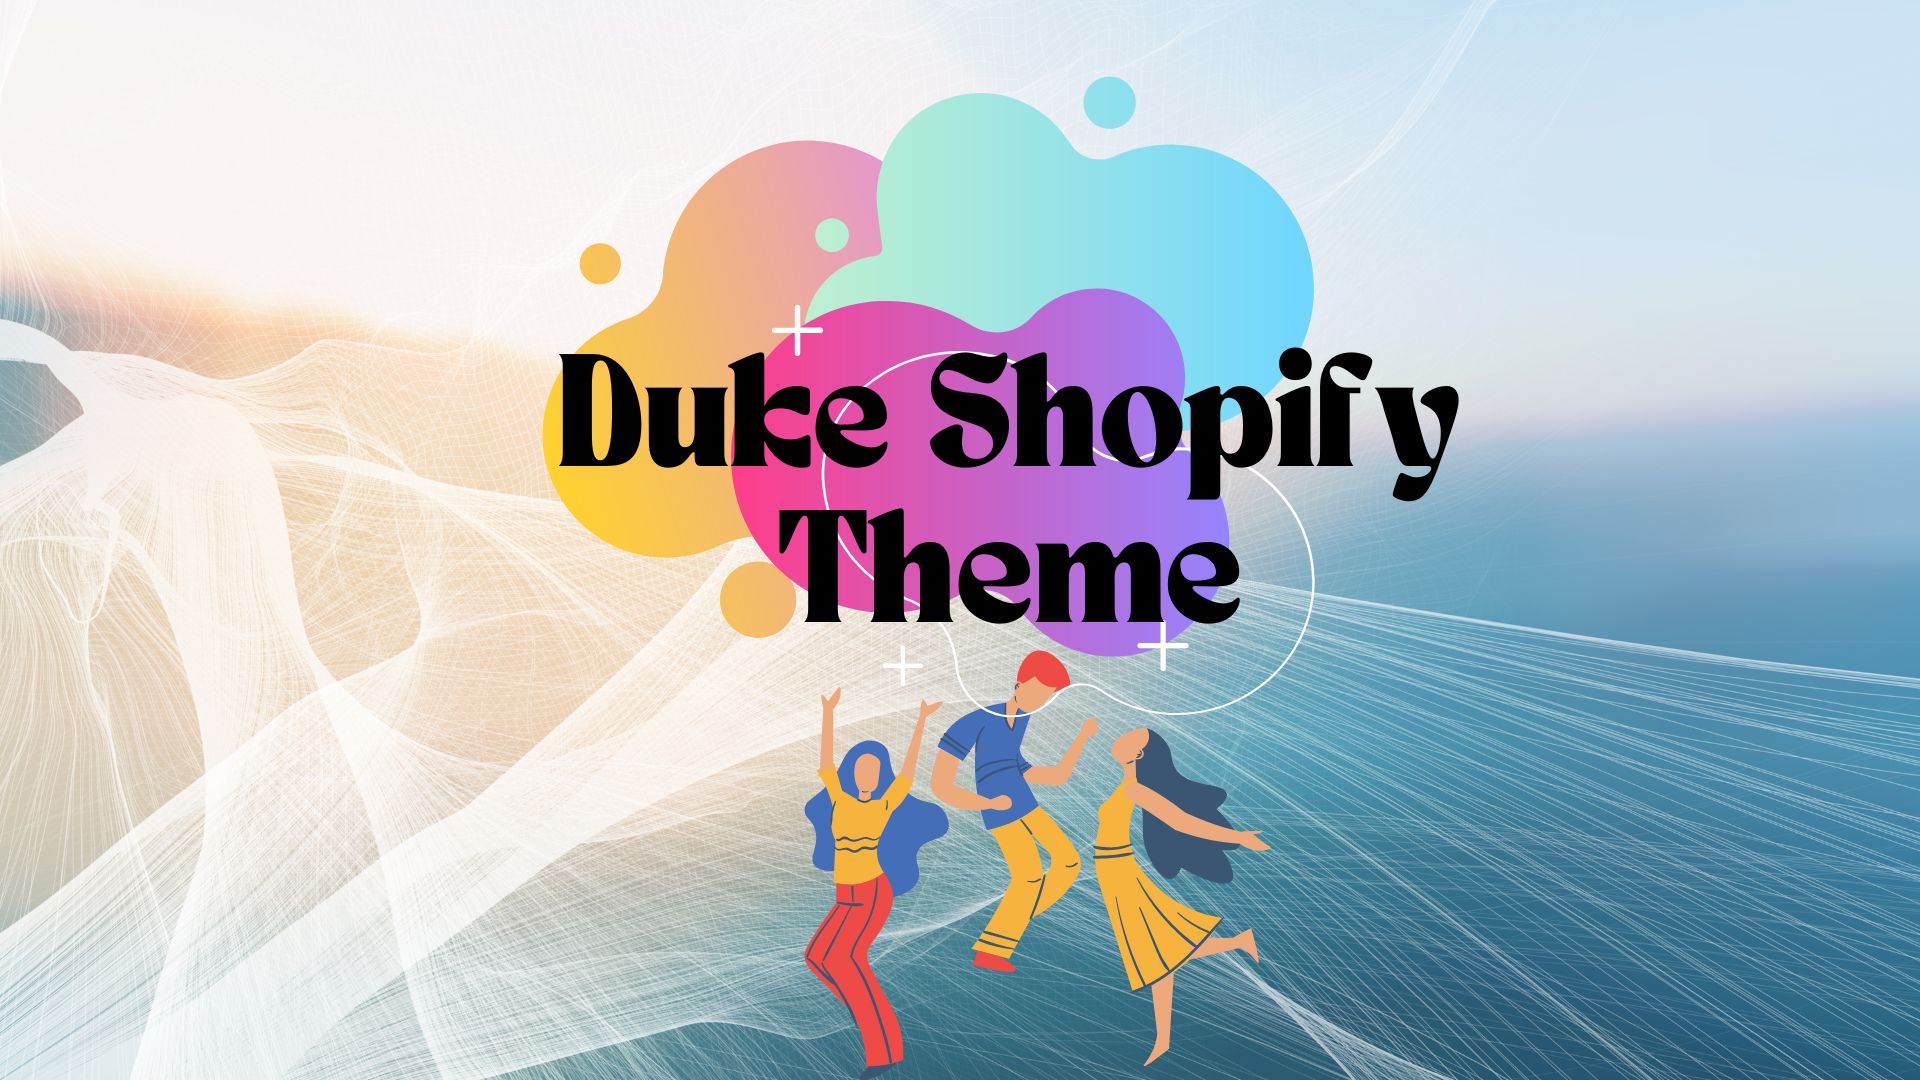 Duke Shopify Theme